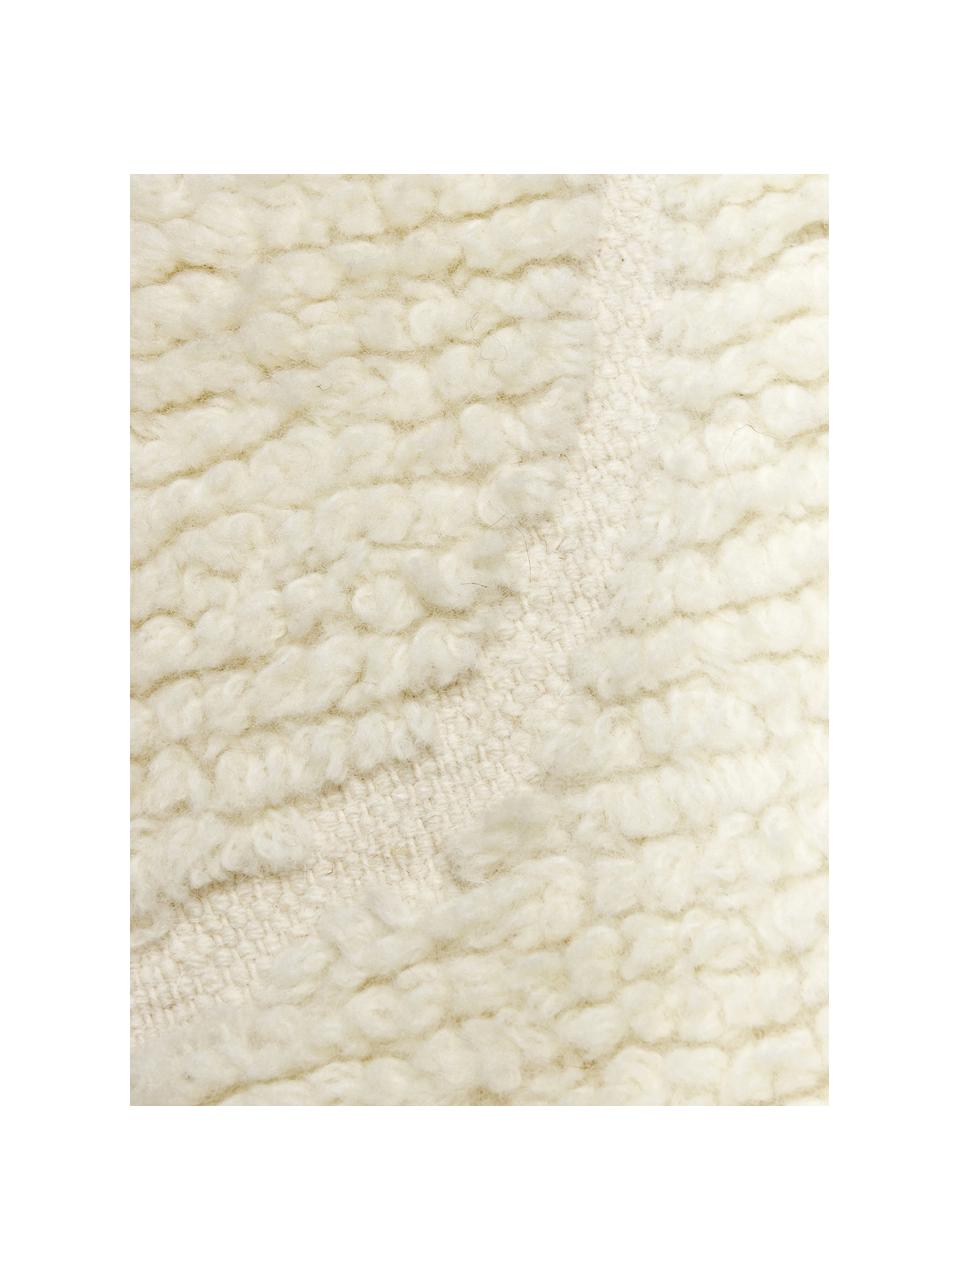 Načechraný koberec s vysokým vlasem a třásněmi Bayu, ručně tkaný, 84 % vlna, 16 % bavlna

V prvních týdnech používání vlněných koberců se může objevit charakteristický jev uvolňování vláken, který po několika týdnech používání zmizí., Béžová, Š 80 cm, D 150 cm (velikost XS)